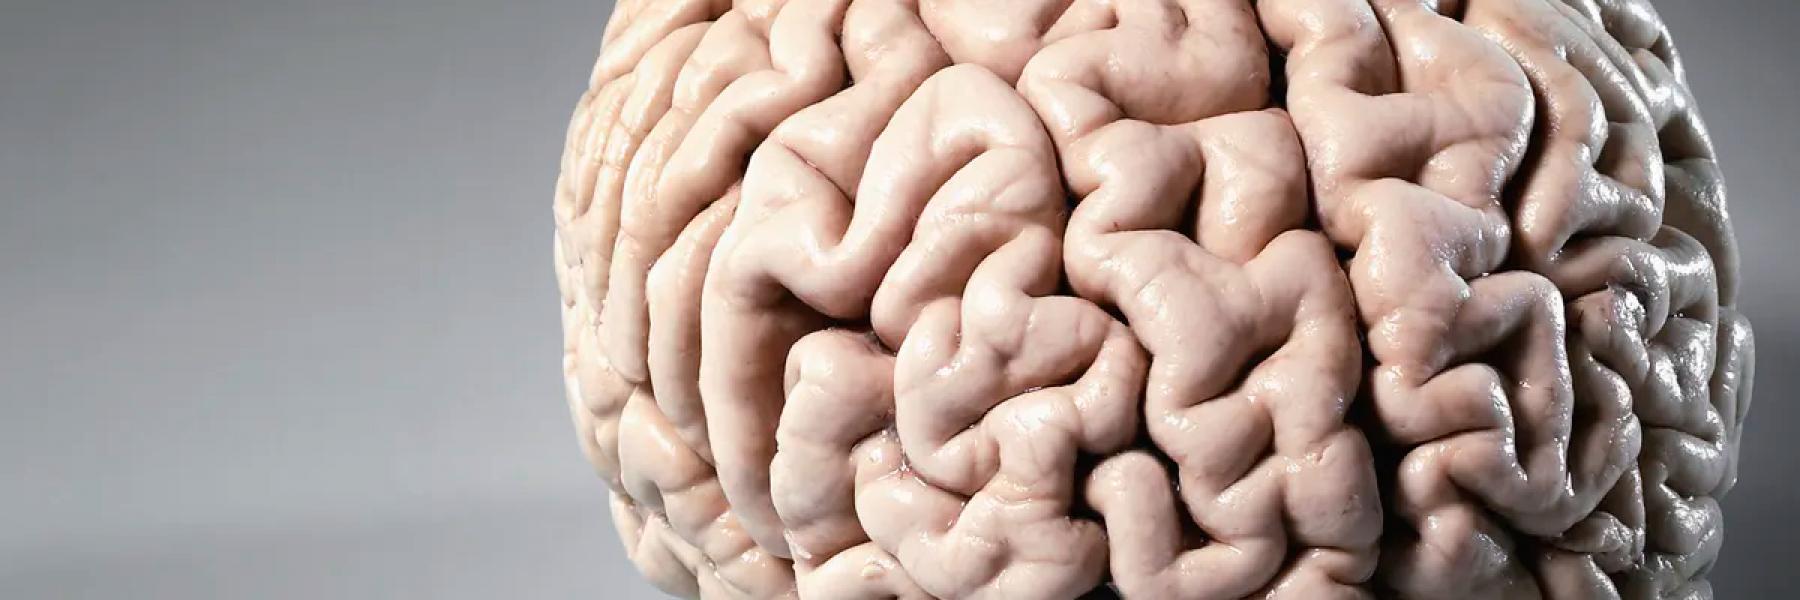 7 أطعمة مهمة لتعزيز صحة الدماغ والذاكرة